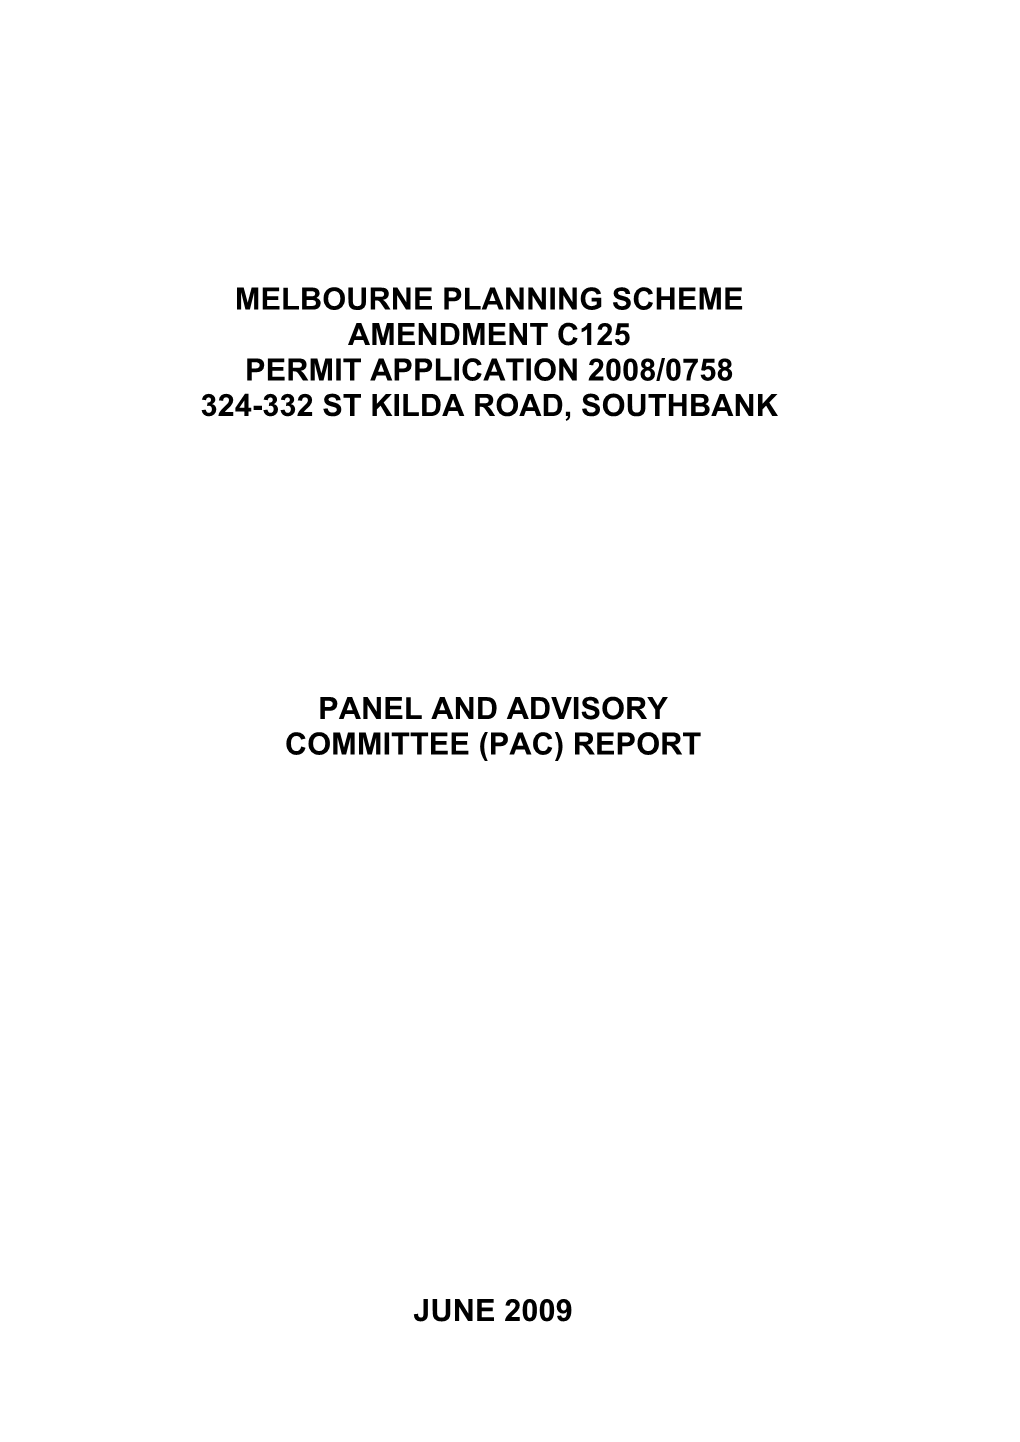 Melbourne Planning Scheme Amendment C125 Permit Application 2008/0758 324-332 St Kilda Road, Southbank